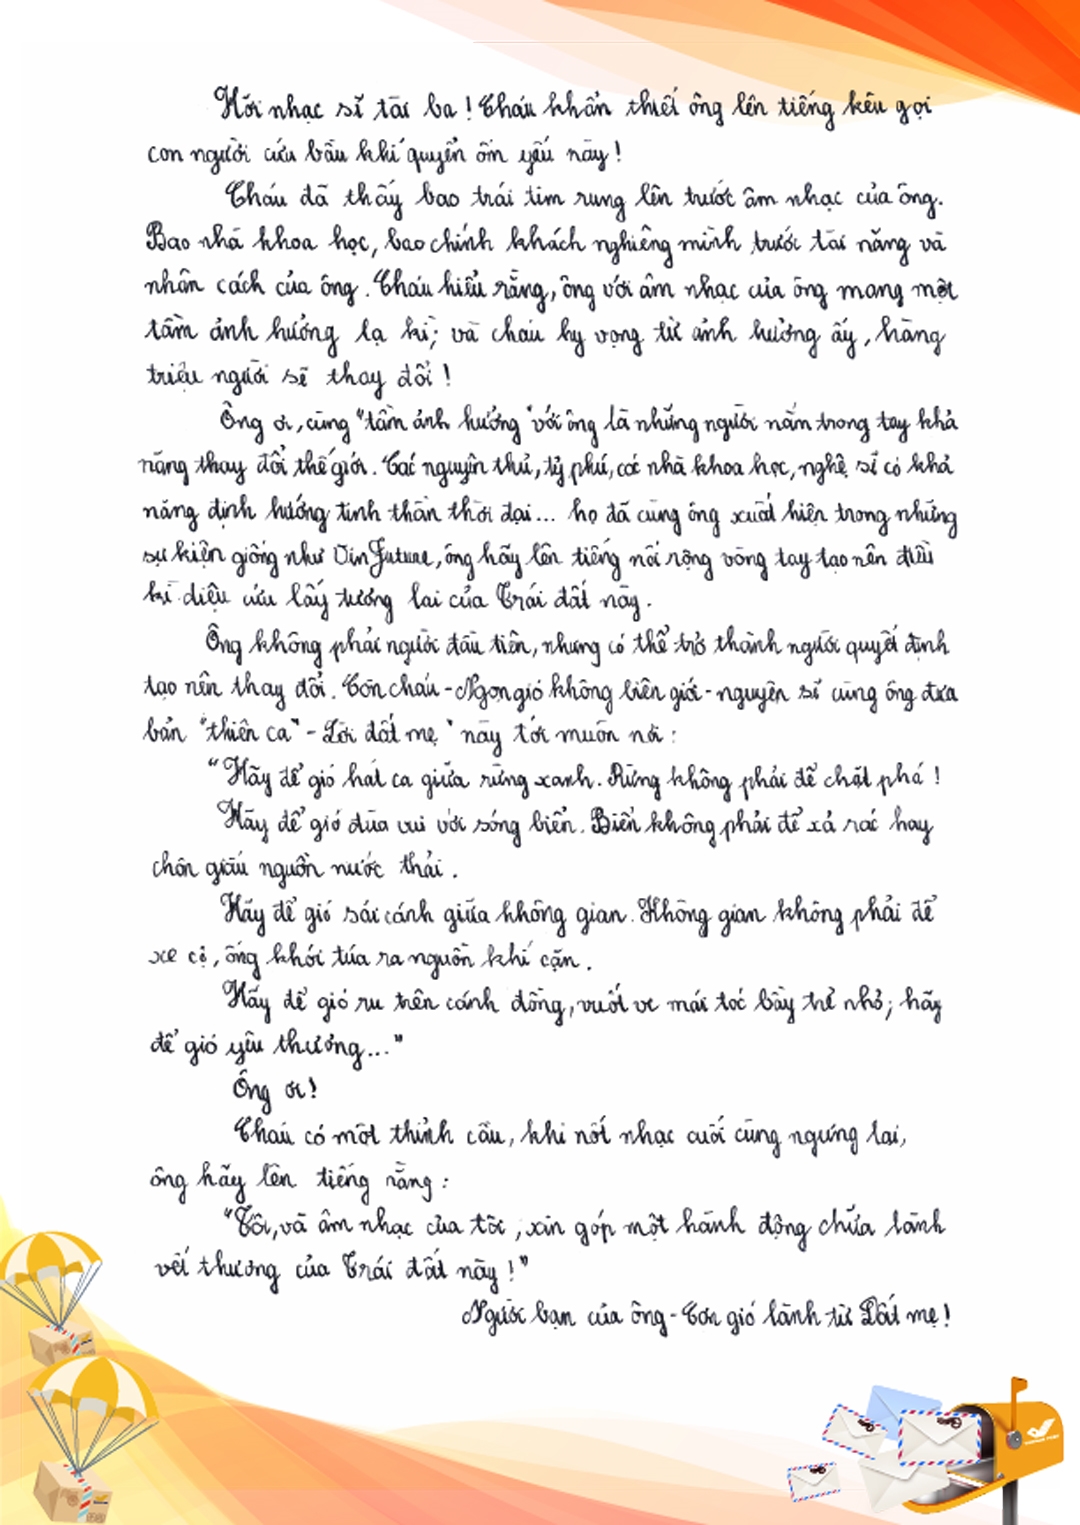 Toàn văn bức thư đoạt giải Nhất của Nguyễn Bình Nguyên